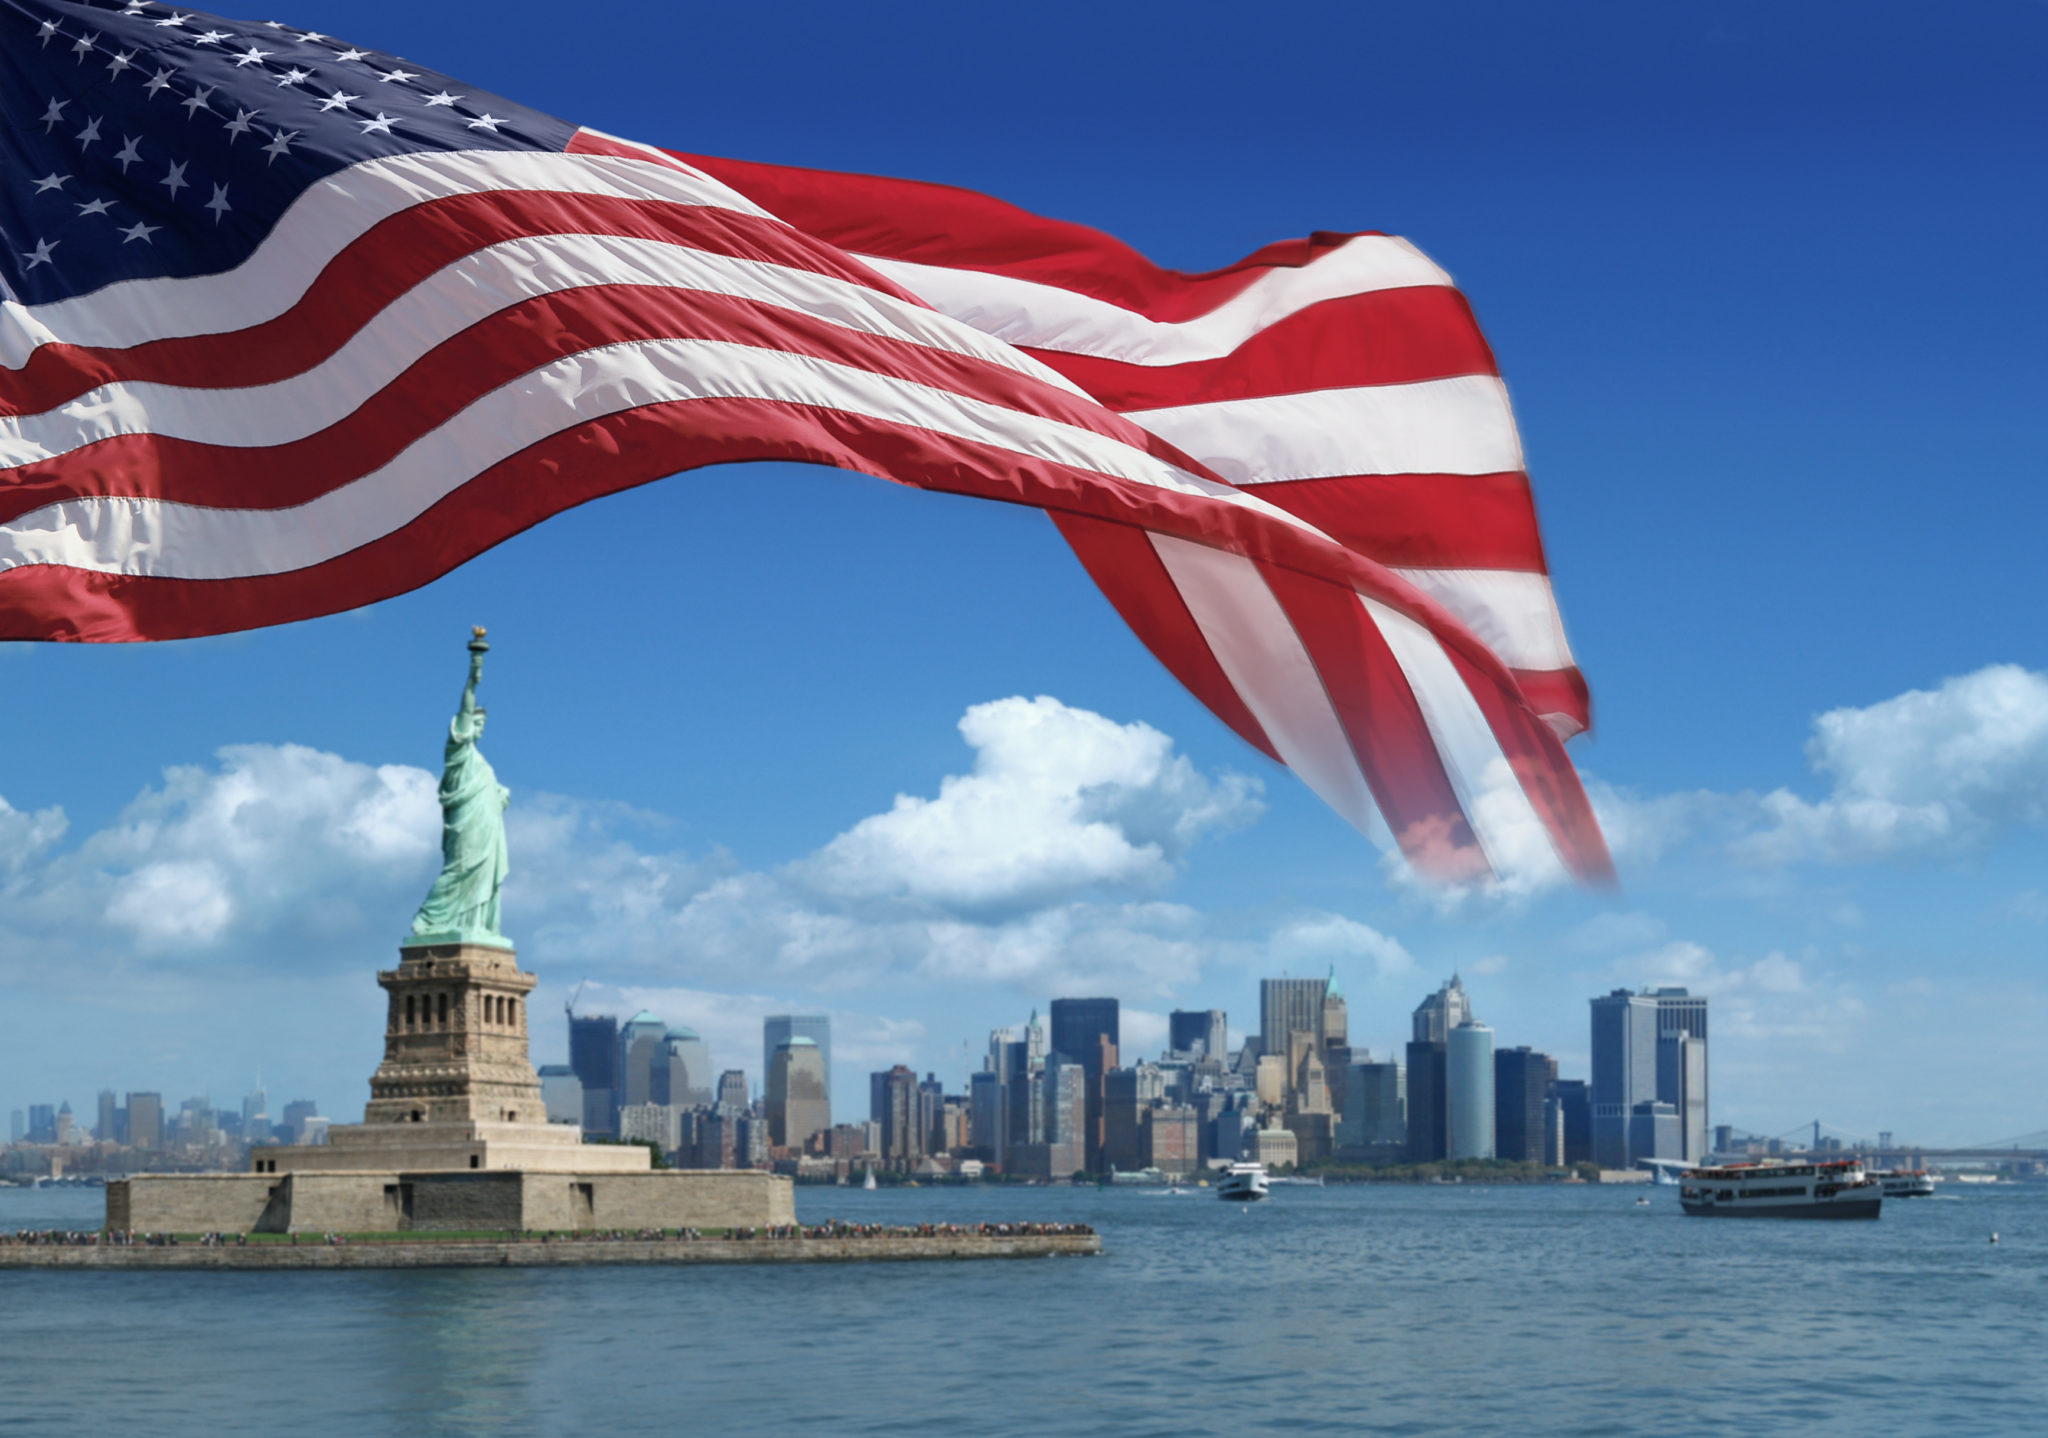 Usa official. Флаг США Нью Йорк. Флаг Нью-Йорка. США флаг и достопримечательности. Американский флаг на фоне города.